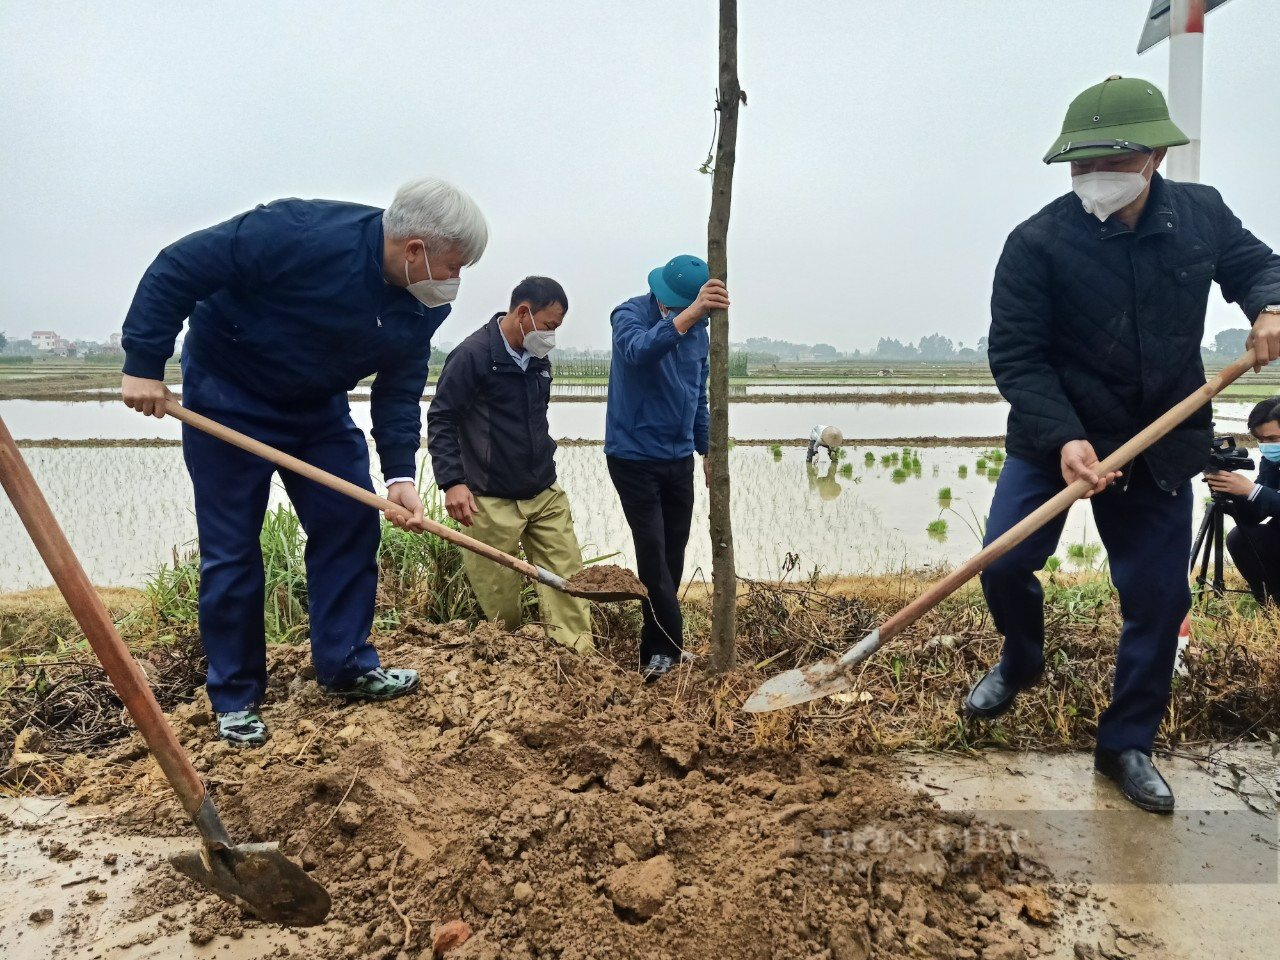 TP. Hải Dương: Chính quyền chung tay với người dân trồng cây phủ xanh đường làng nông thôn - Ảnh 4.